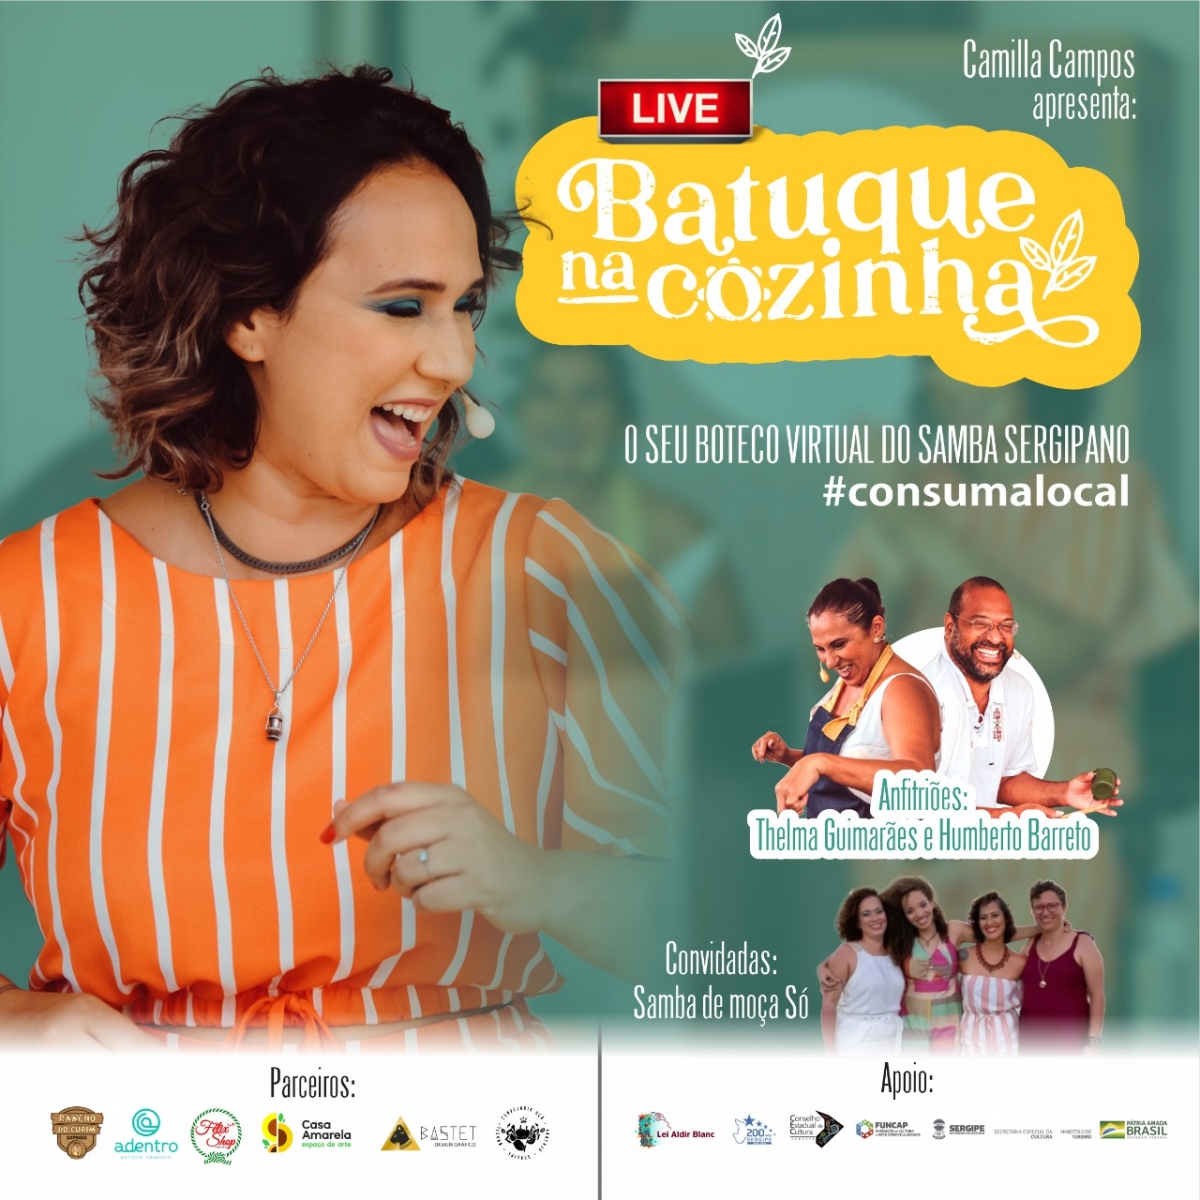 Samba e gastronomia fazem parte de lançamento do boteco virtual Batuque na Cozinha (Imagem: Divulgação)